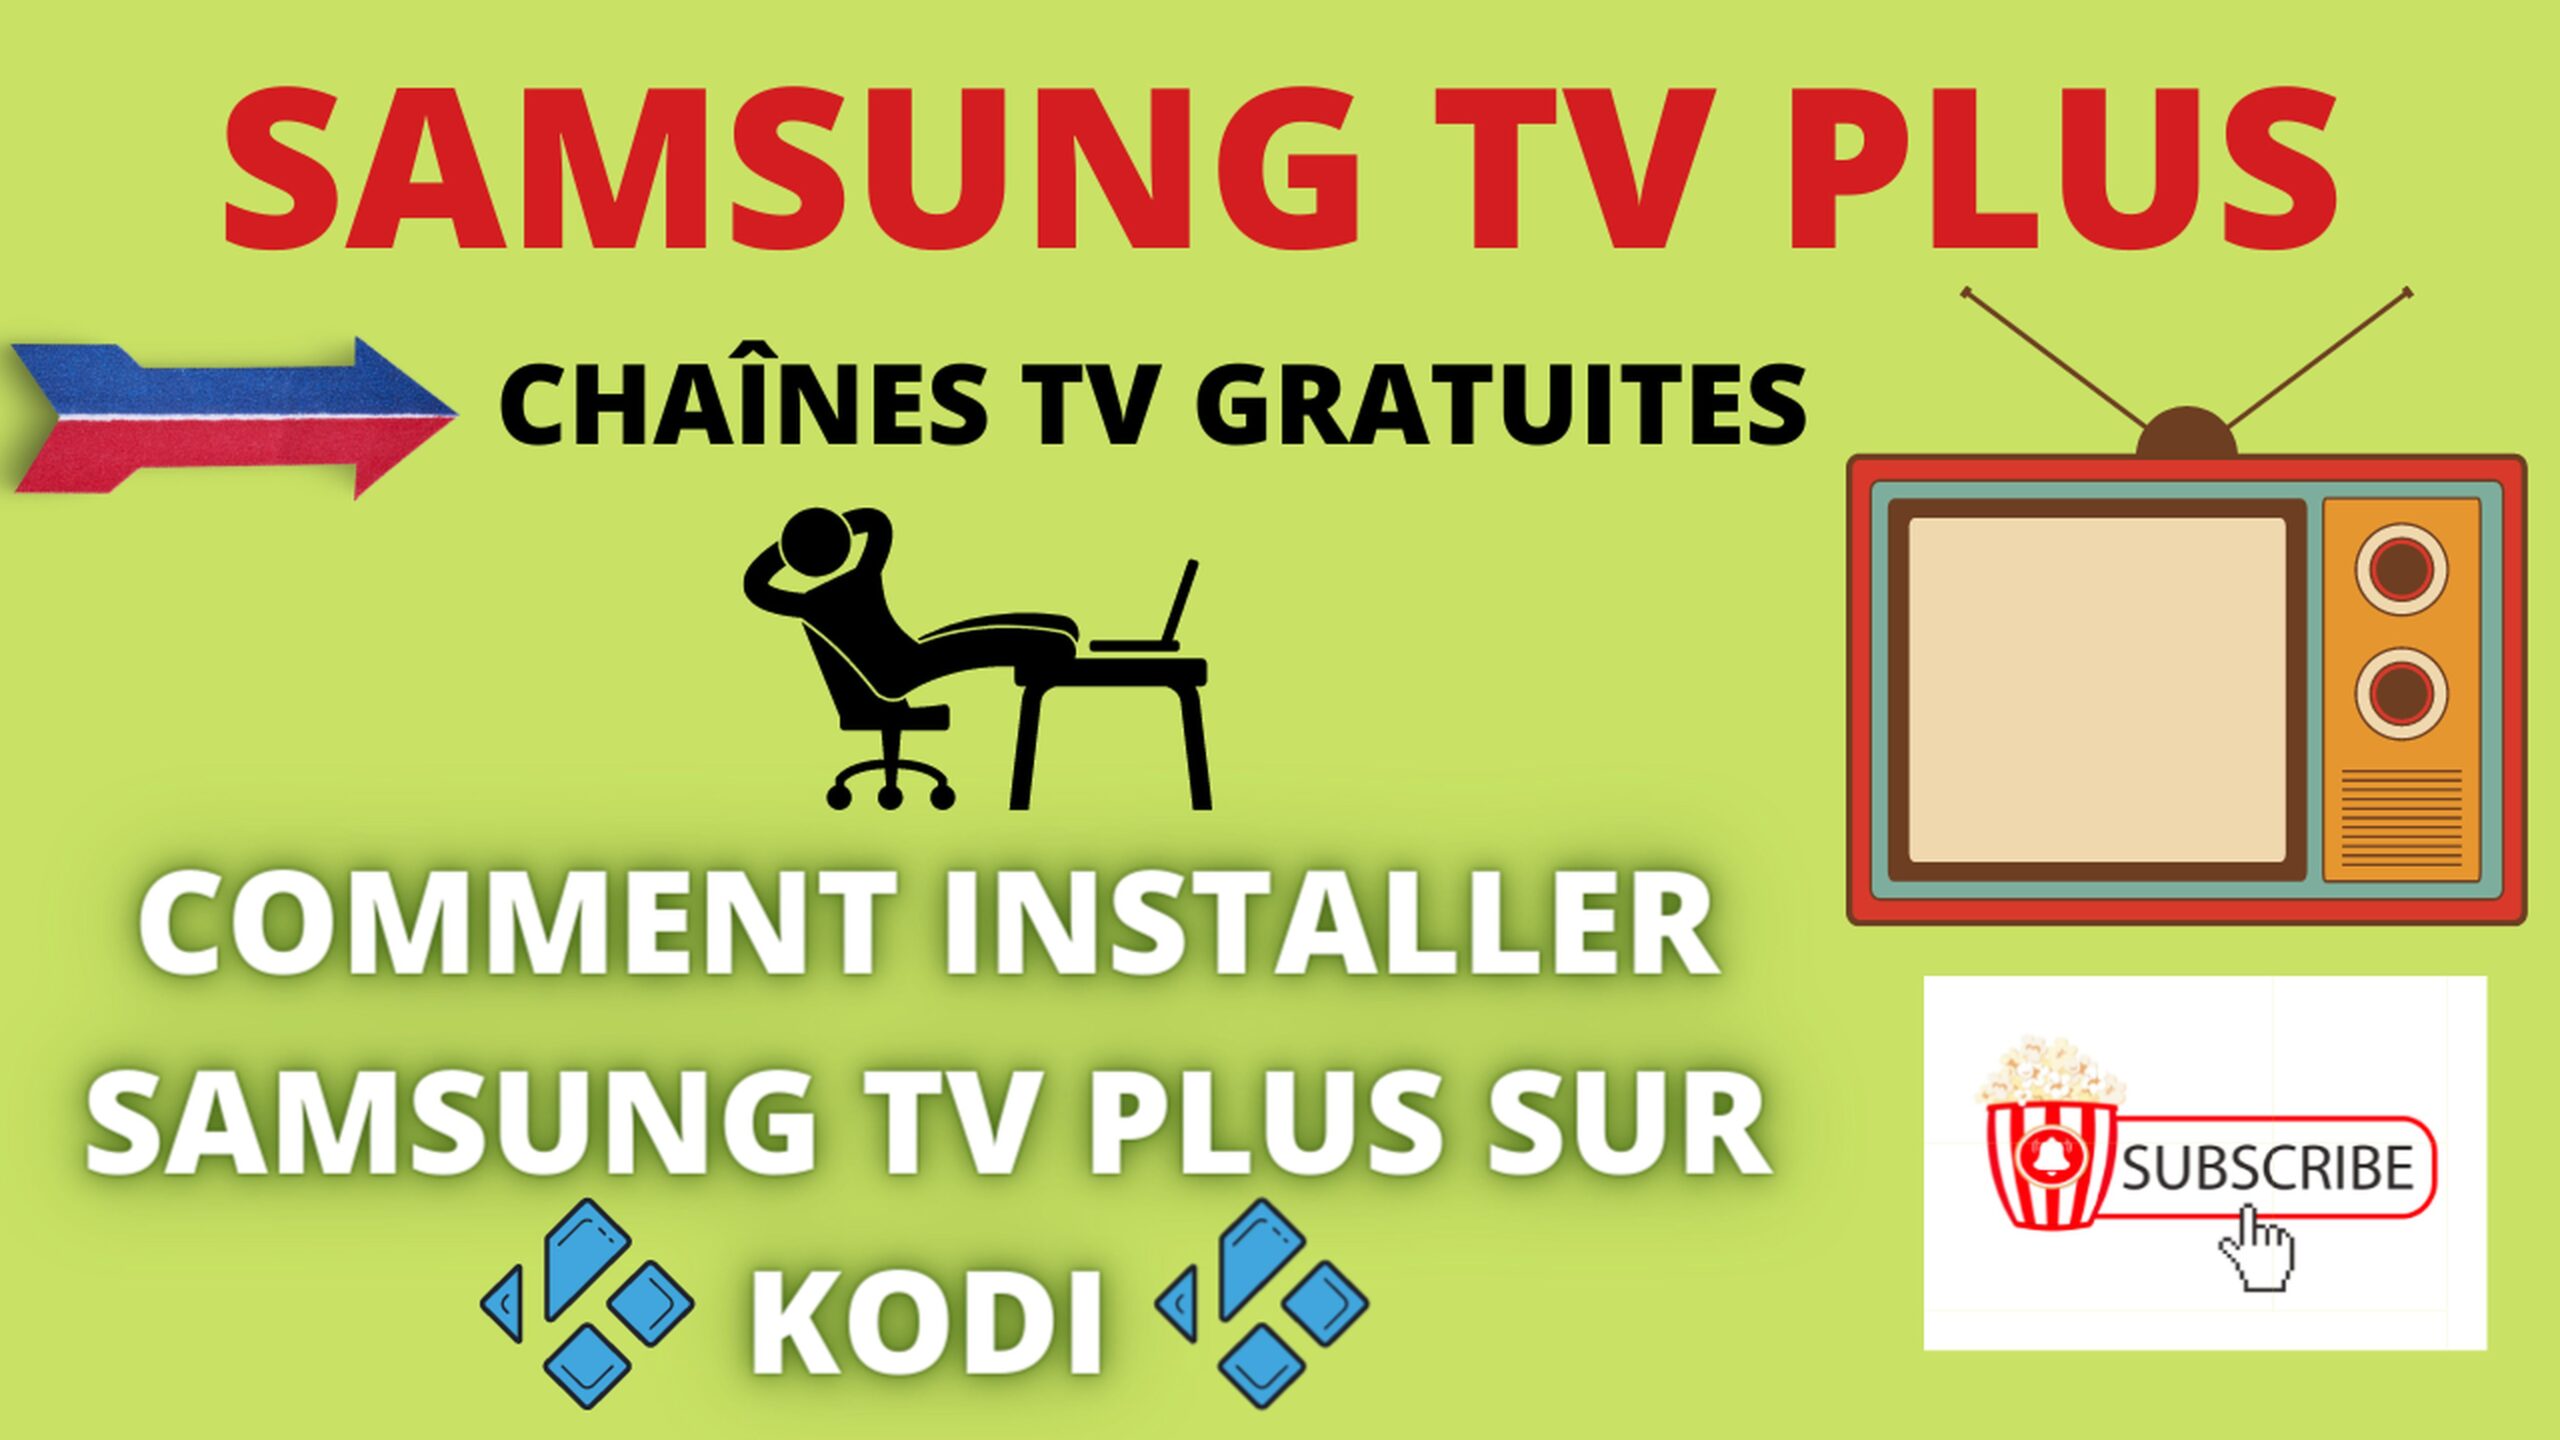 Samsung TV Plus sur KODI pour regarder la télé gratuitement